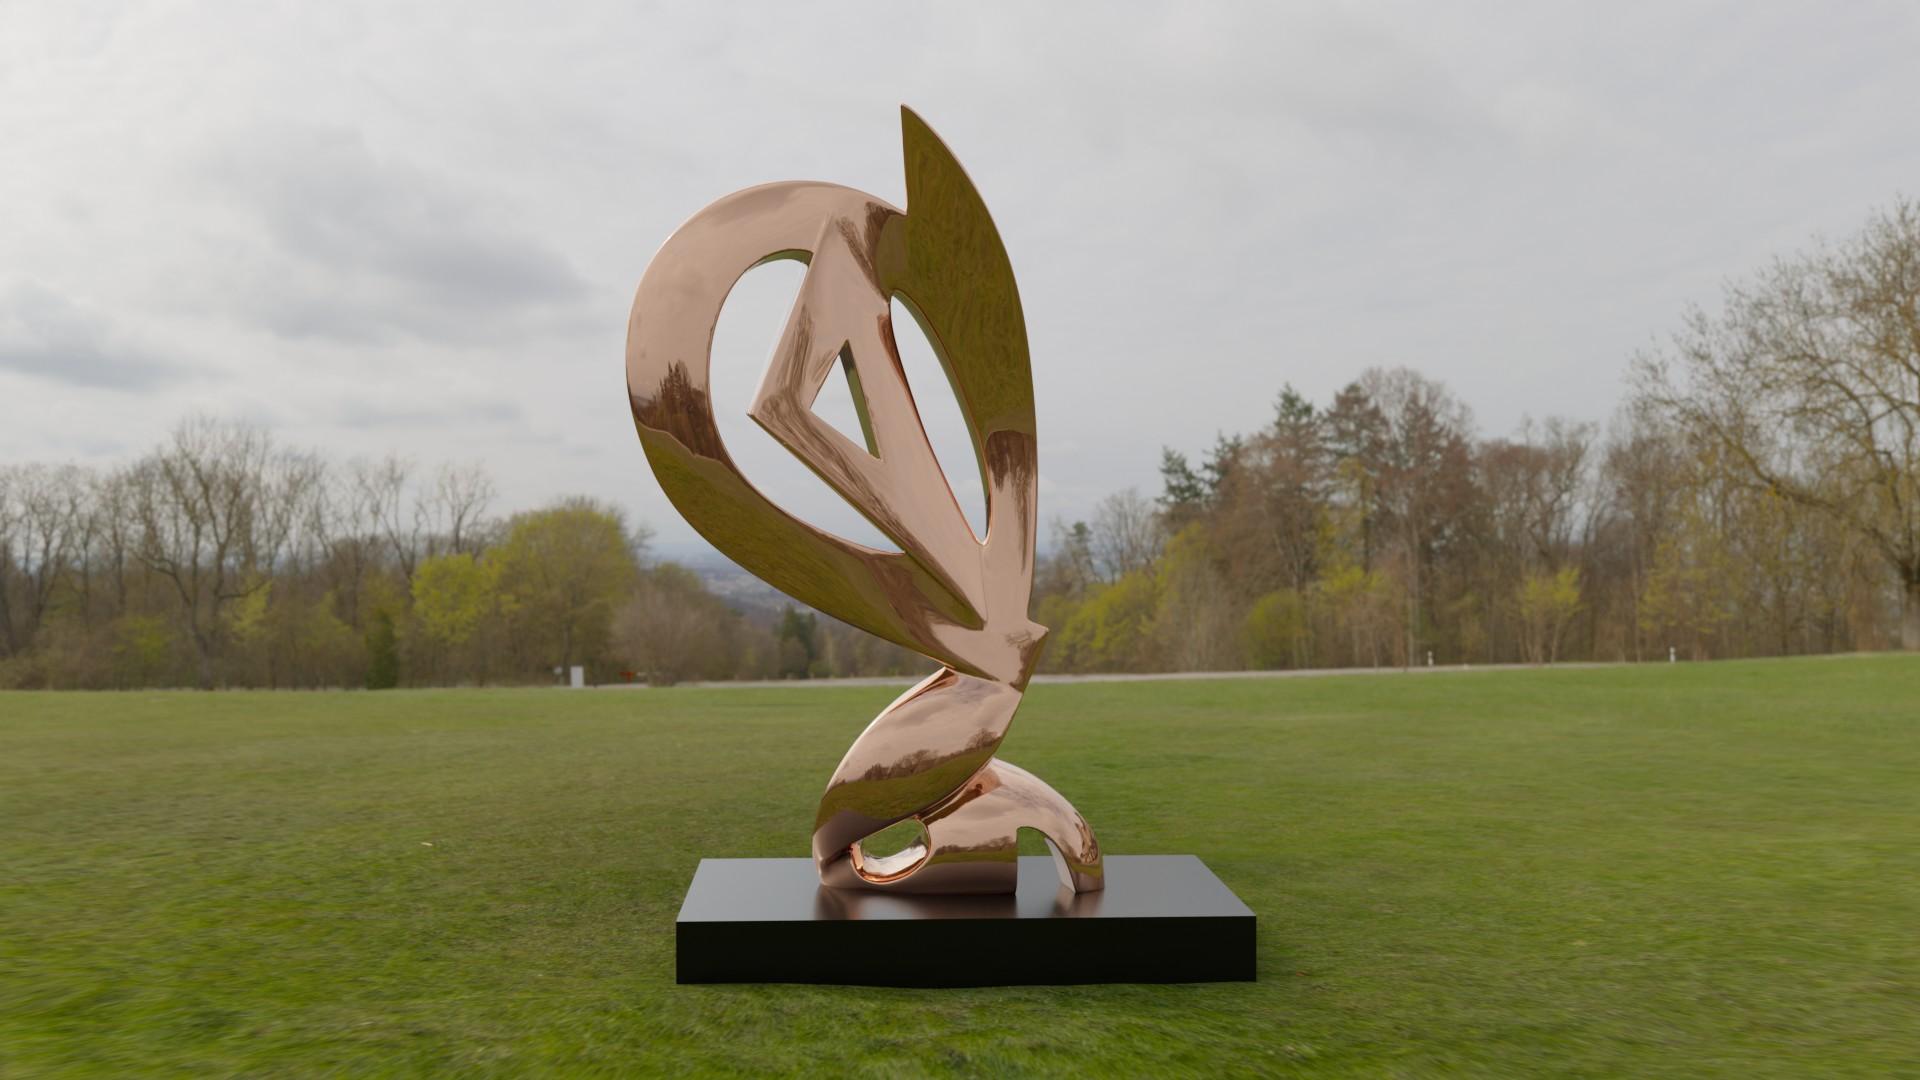 Jan Willem Krijger Abstract Sculpture – The Guardian